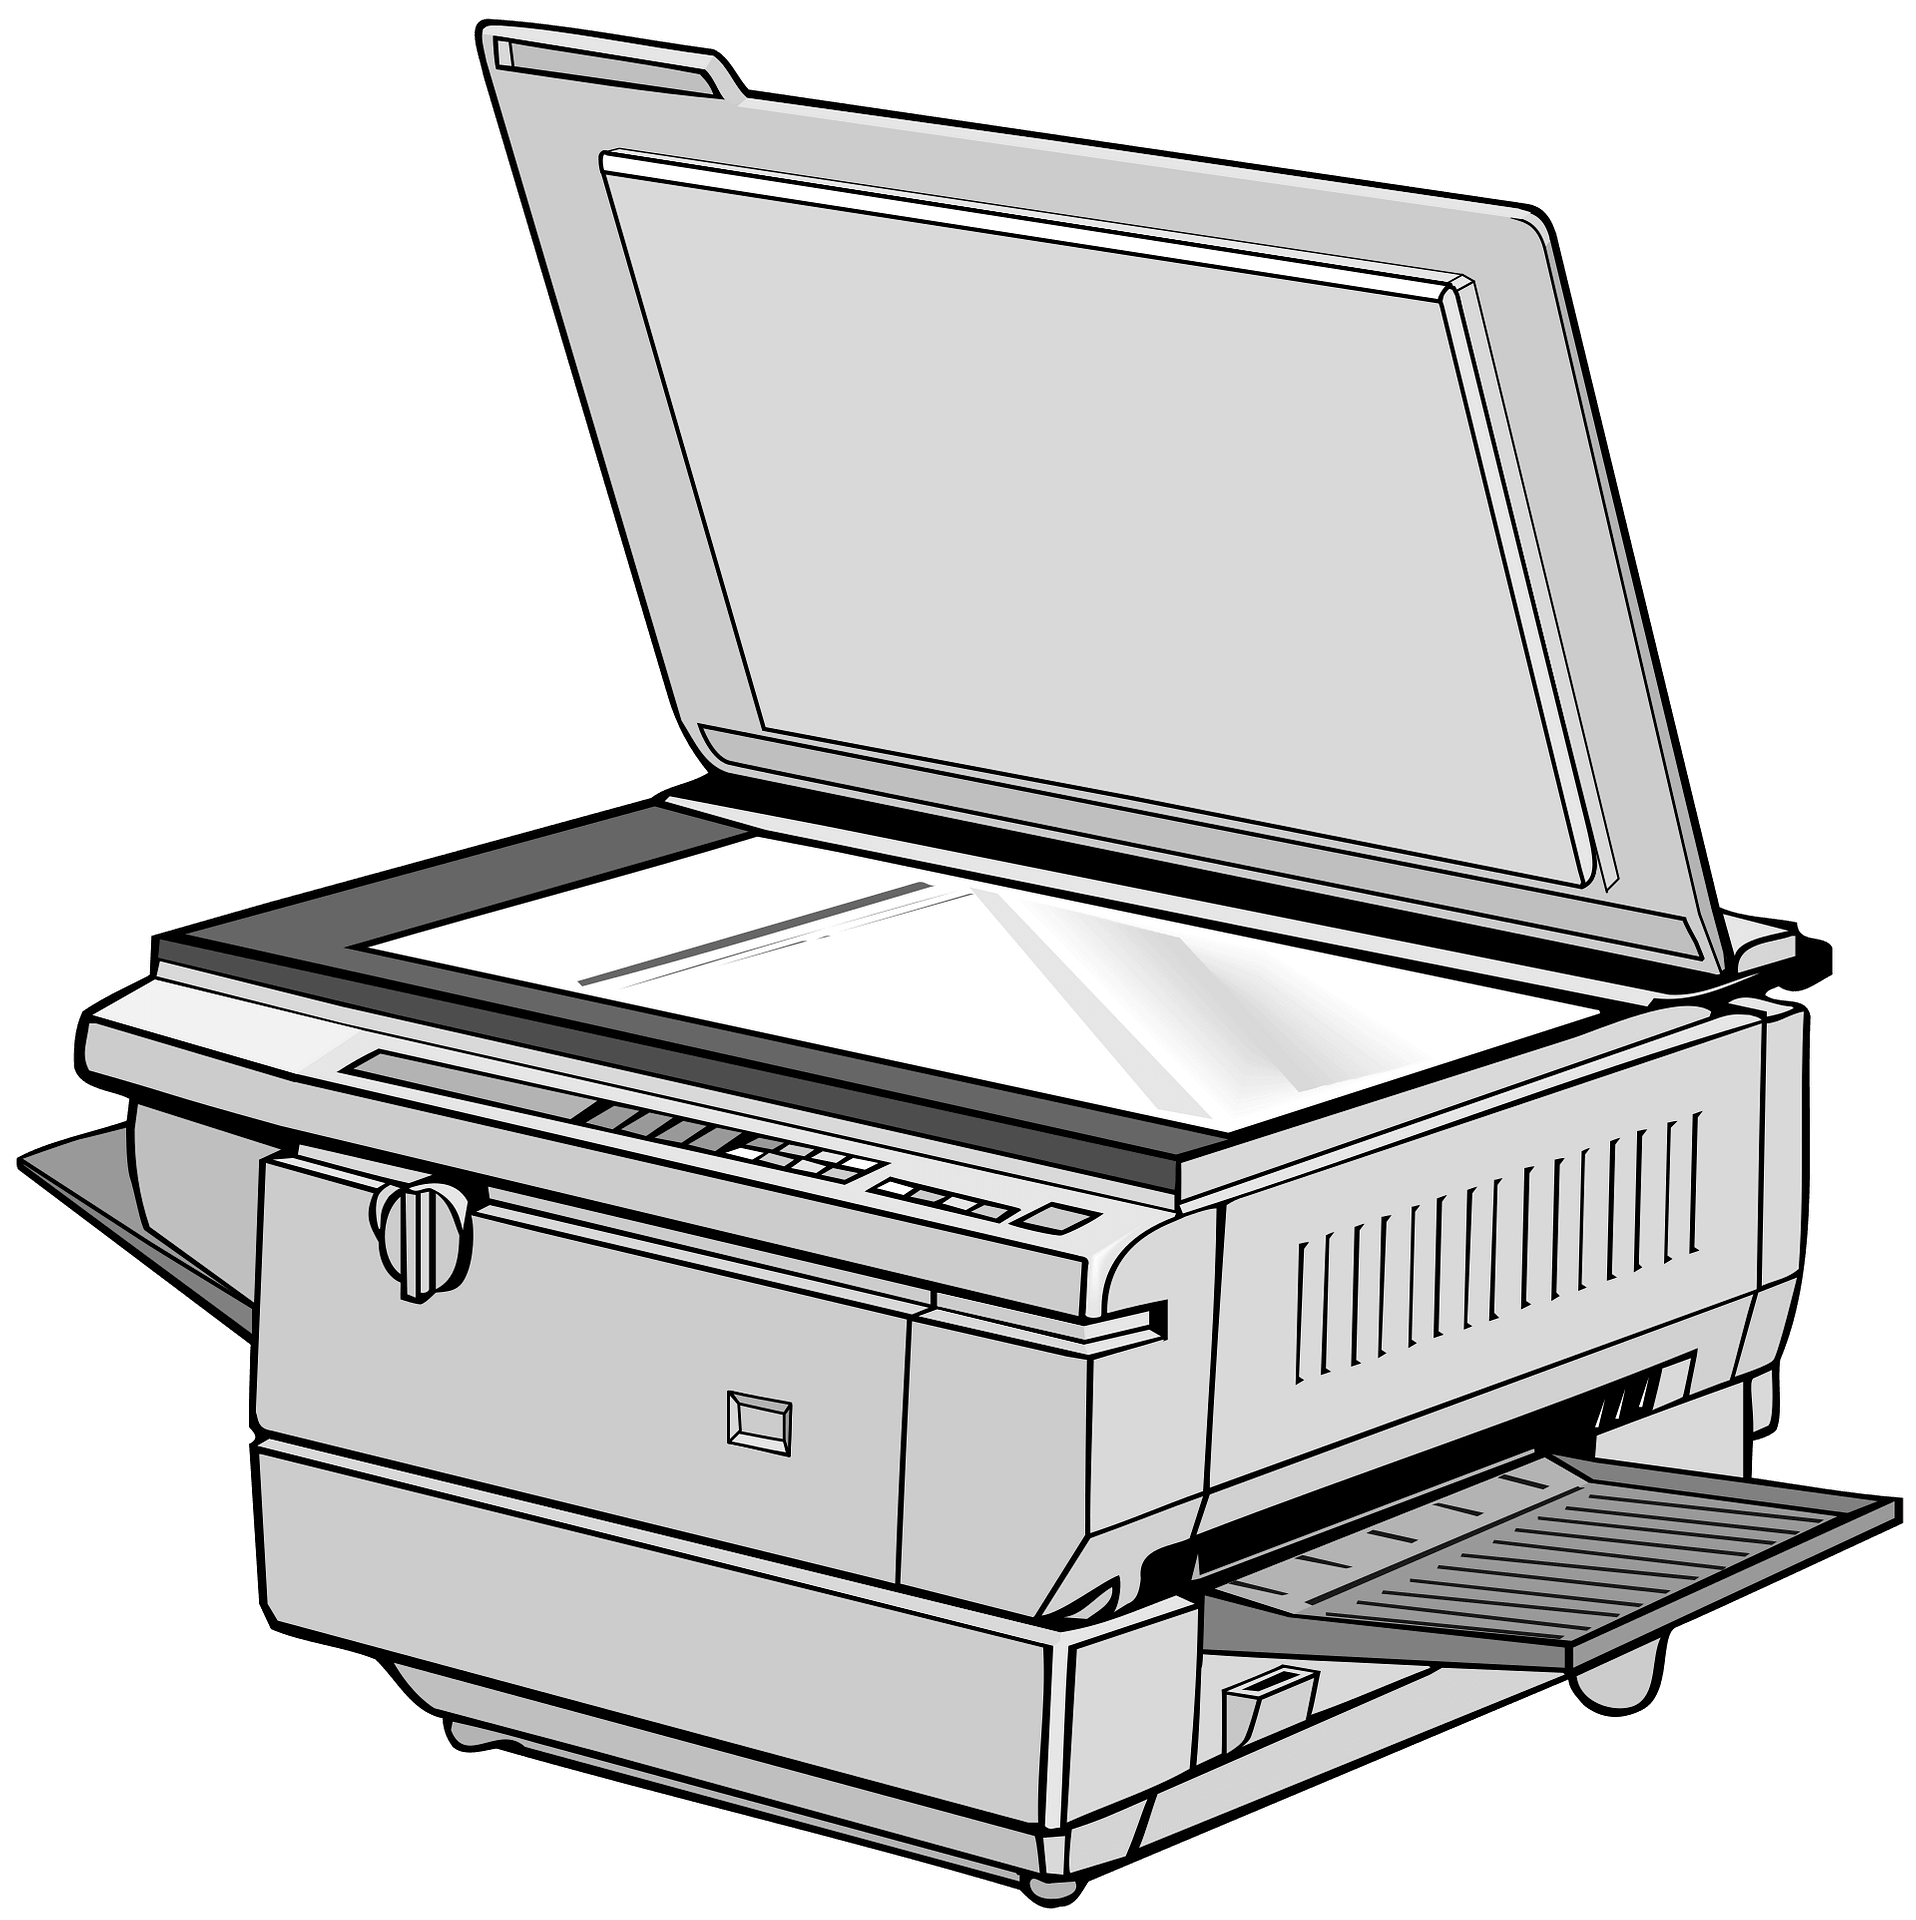 Ксерокс принтер 560 чертеж вид спереди. Копировальный аппарат ксерокс. Копировальный принтер. Принтер мультяшный. Принтер на черном фоне